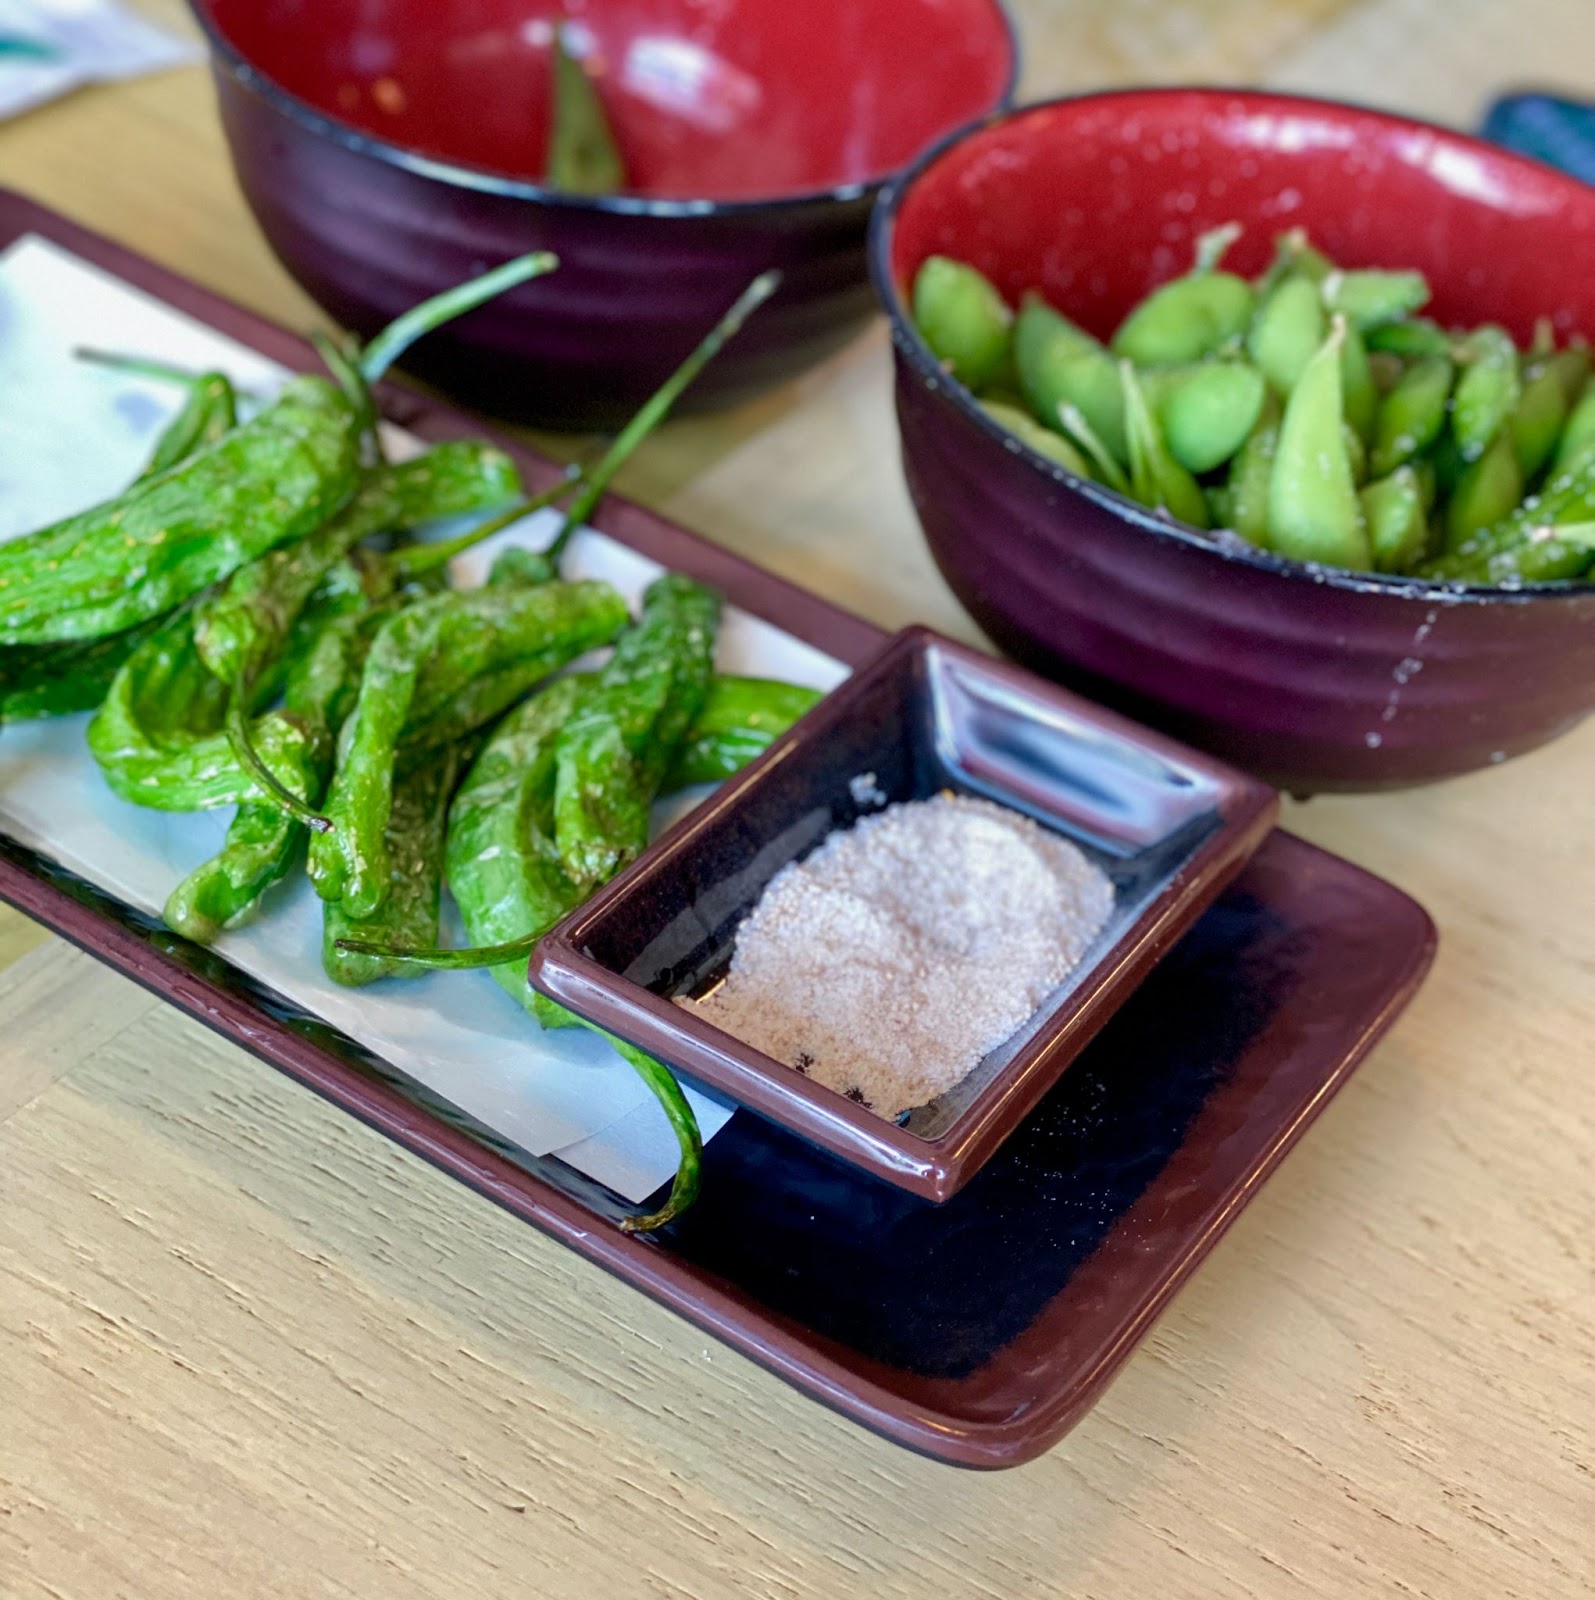 ทำความรู้จักเมนูอาหารญี่ปุ่น Edamame เคล็ดลับอายุยืนของคนญี่ปุ่น2